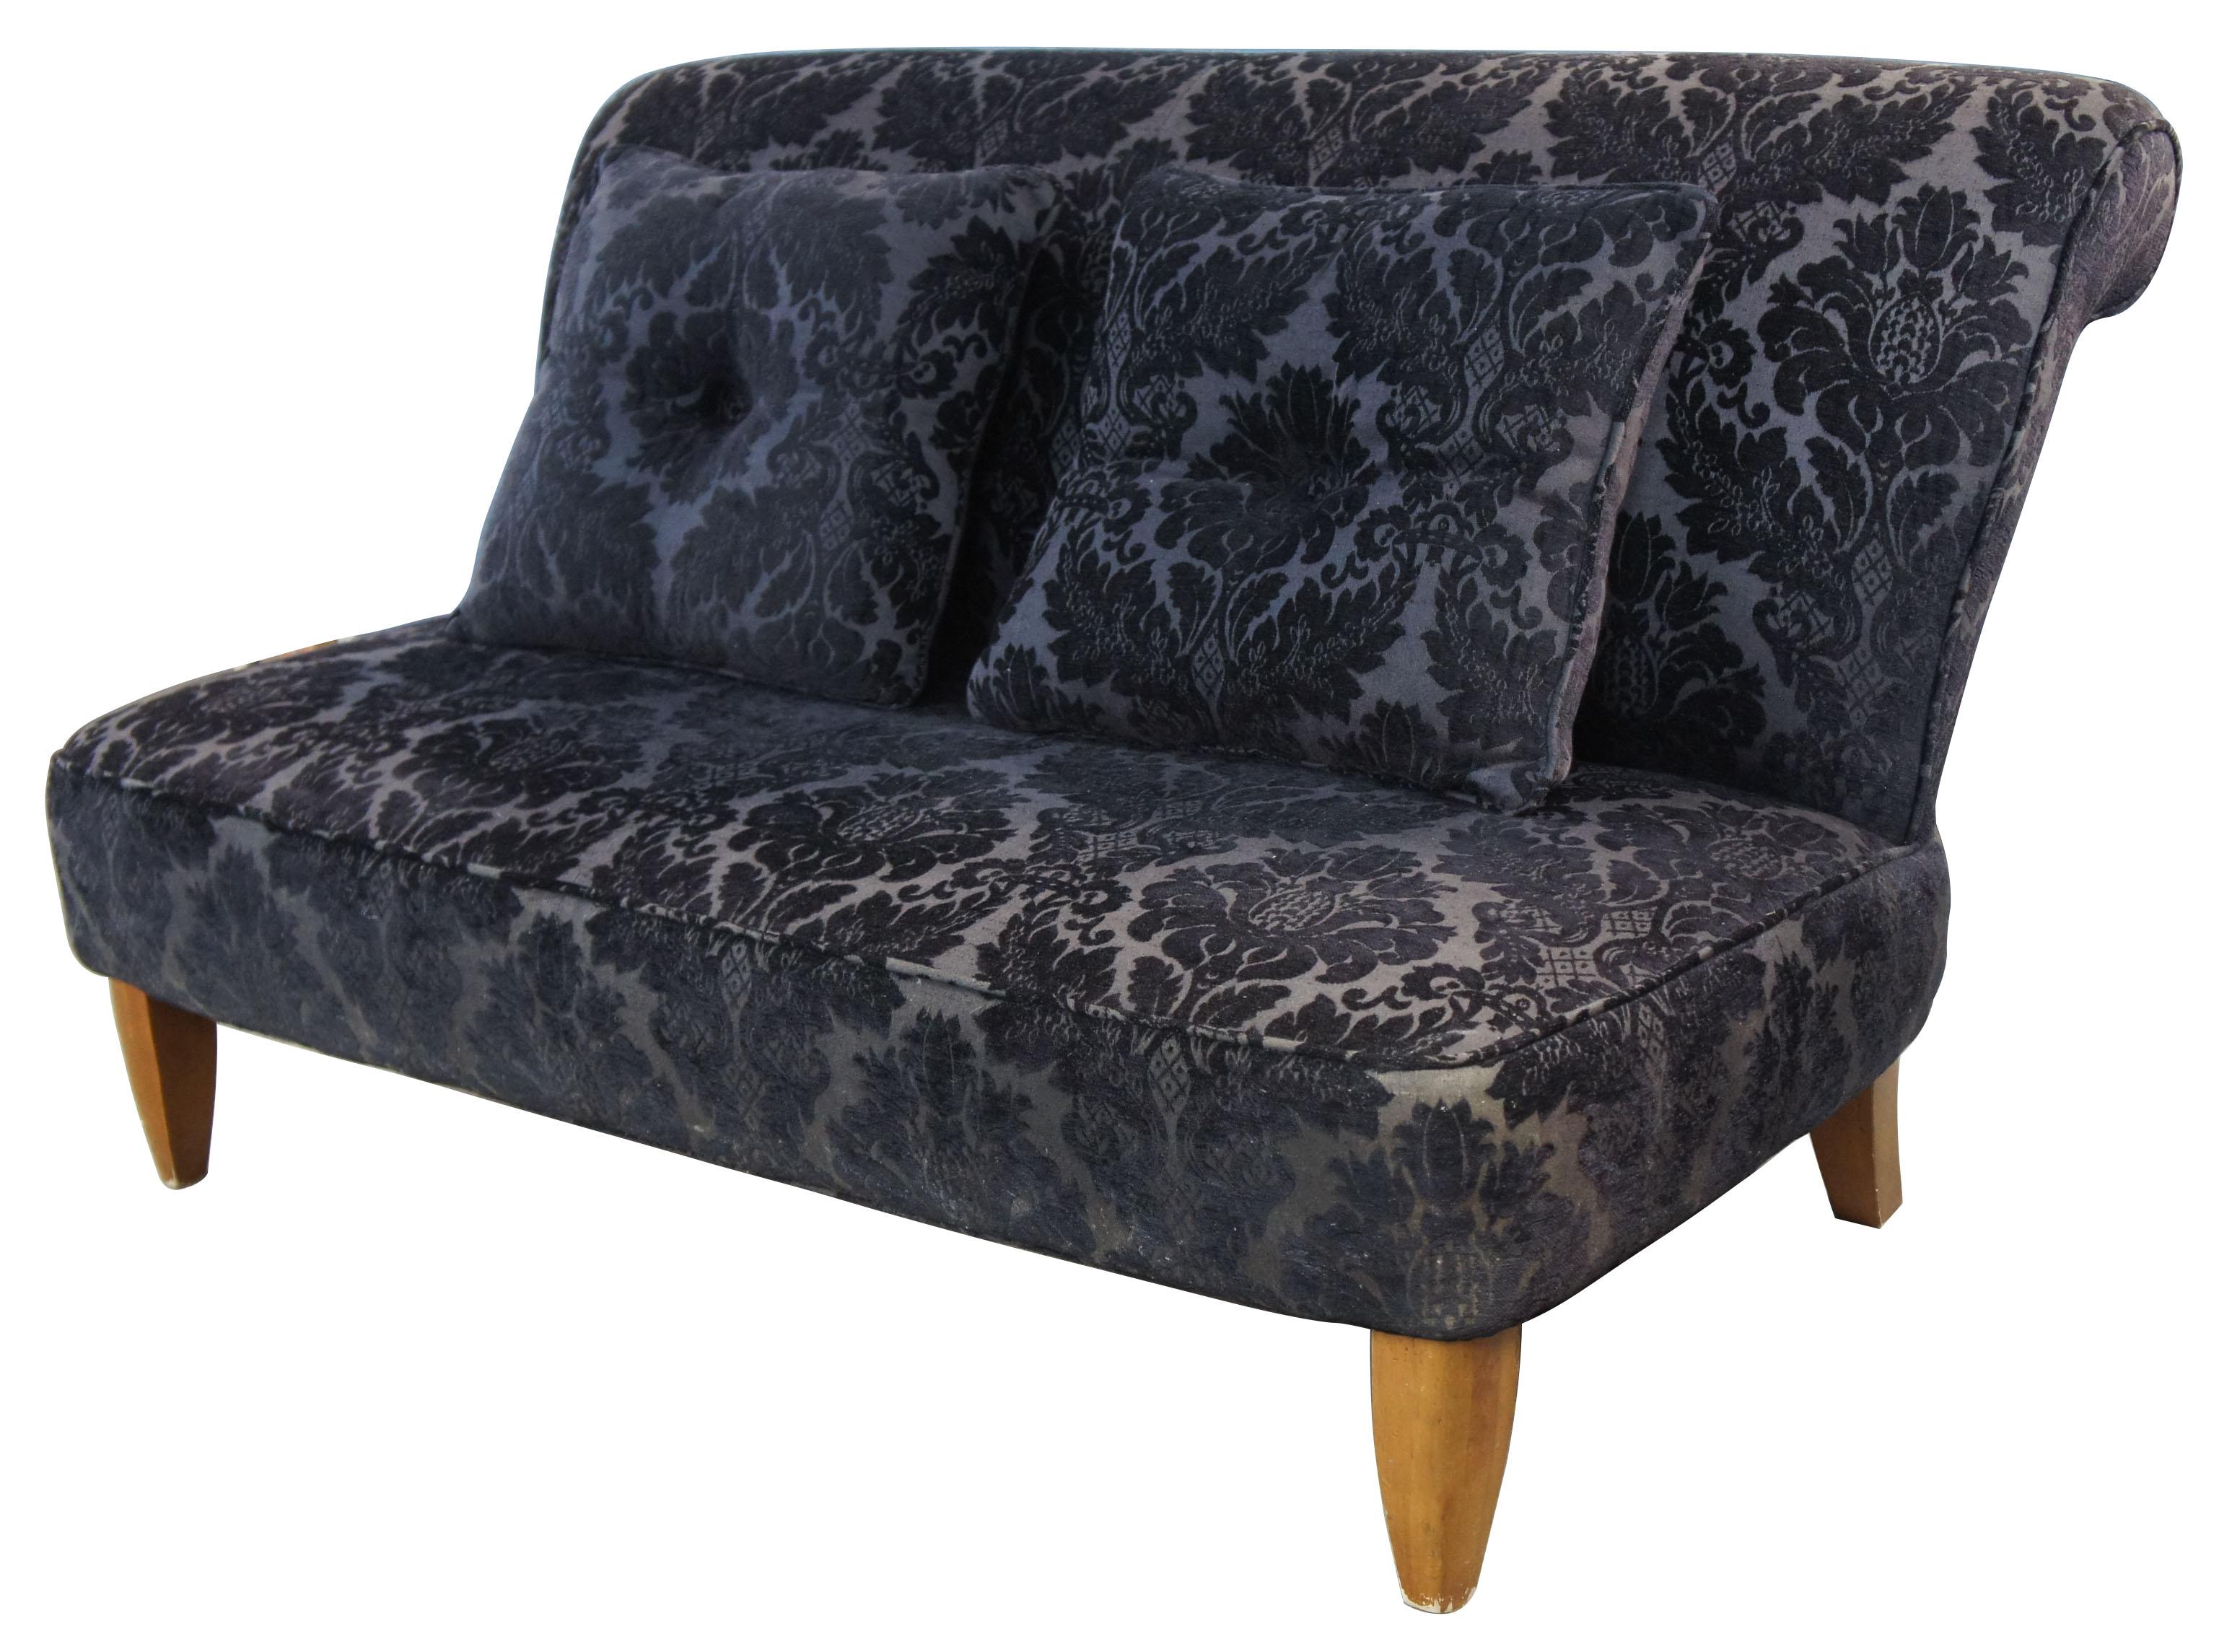 Century Furniture Unterschrift Sofa Französisch inspiriert schwarz beflockt Loveseat Elkins

Wunderschön gepolstert mit einem beflockten, geblümten Stoff. Dieses Sofa war das Vorgängermodell des heutigen Elkins Tufted Settee 44-1005.